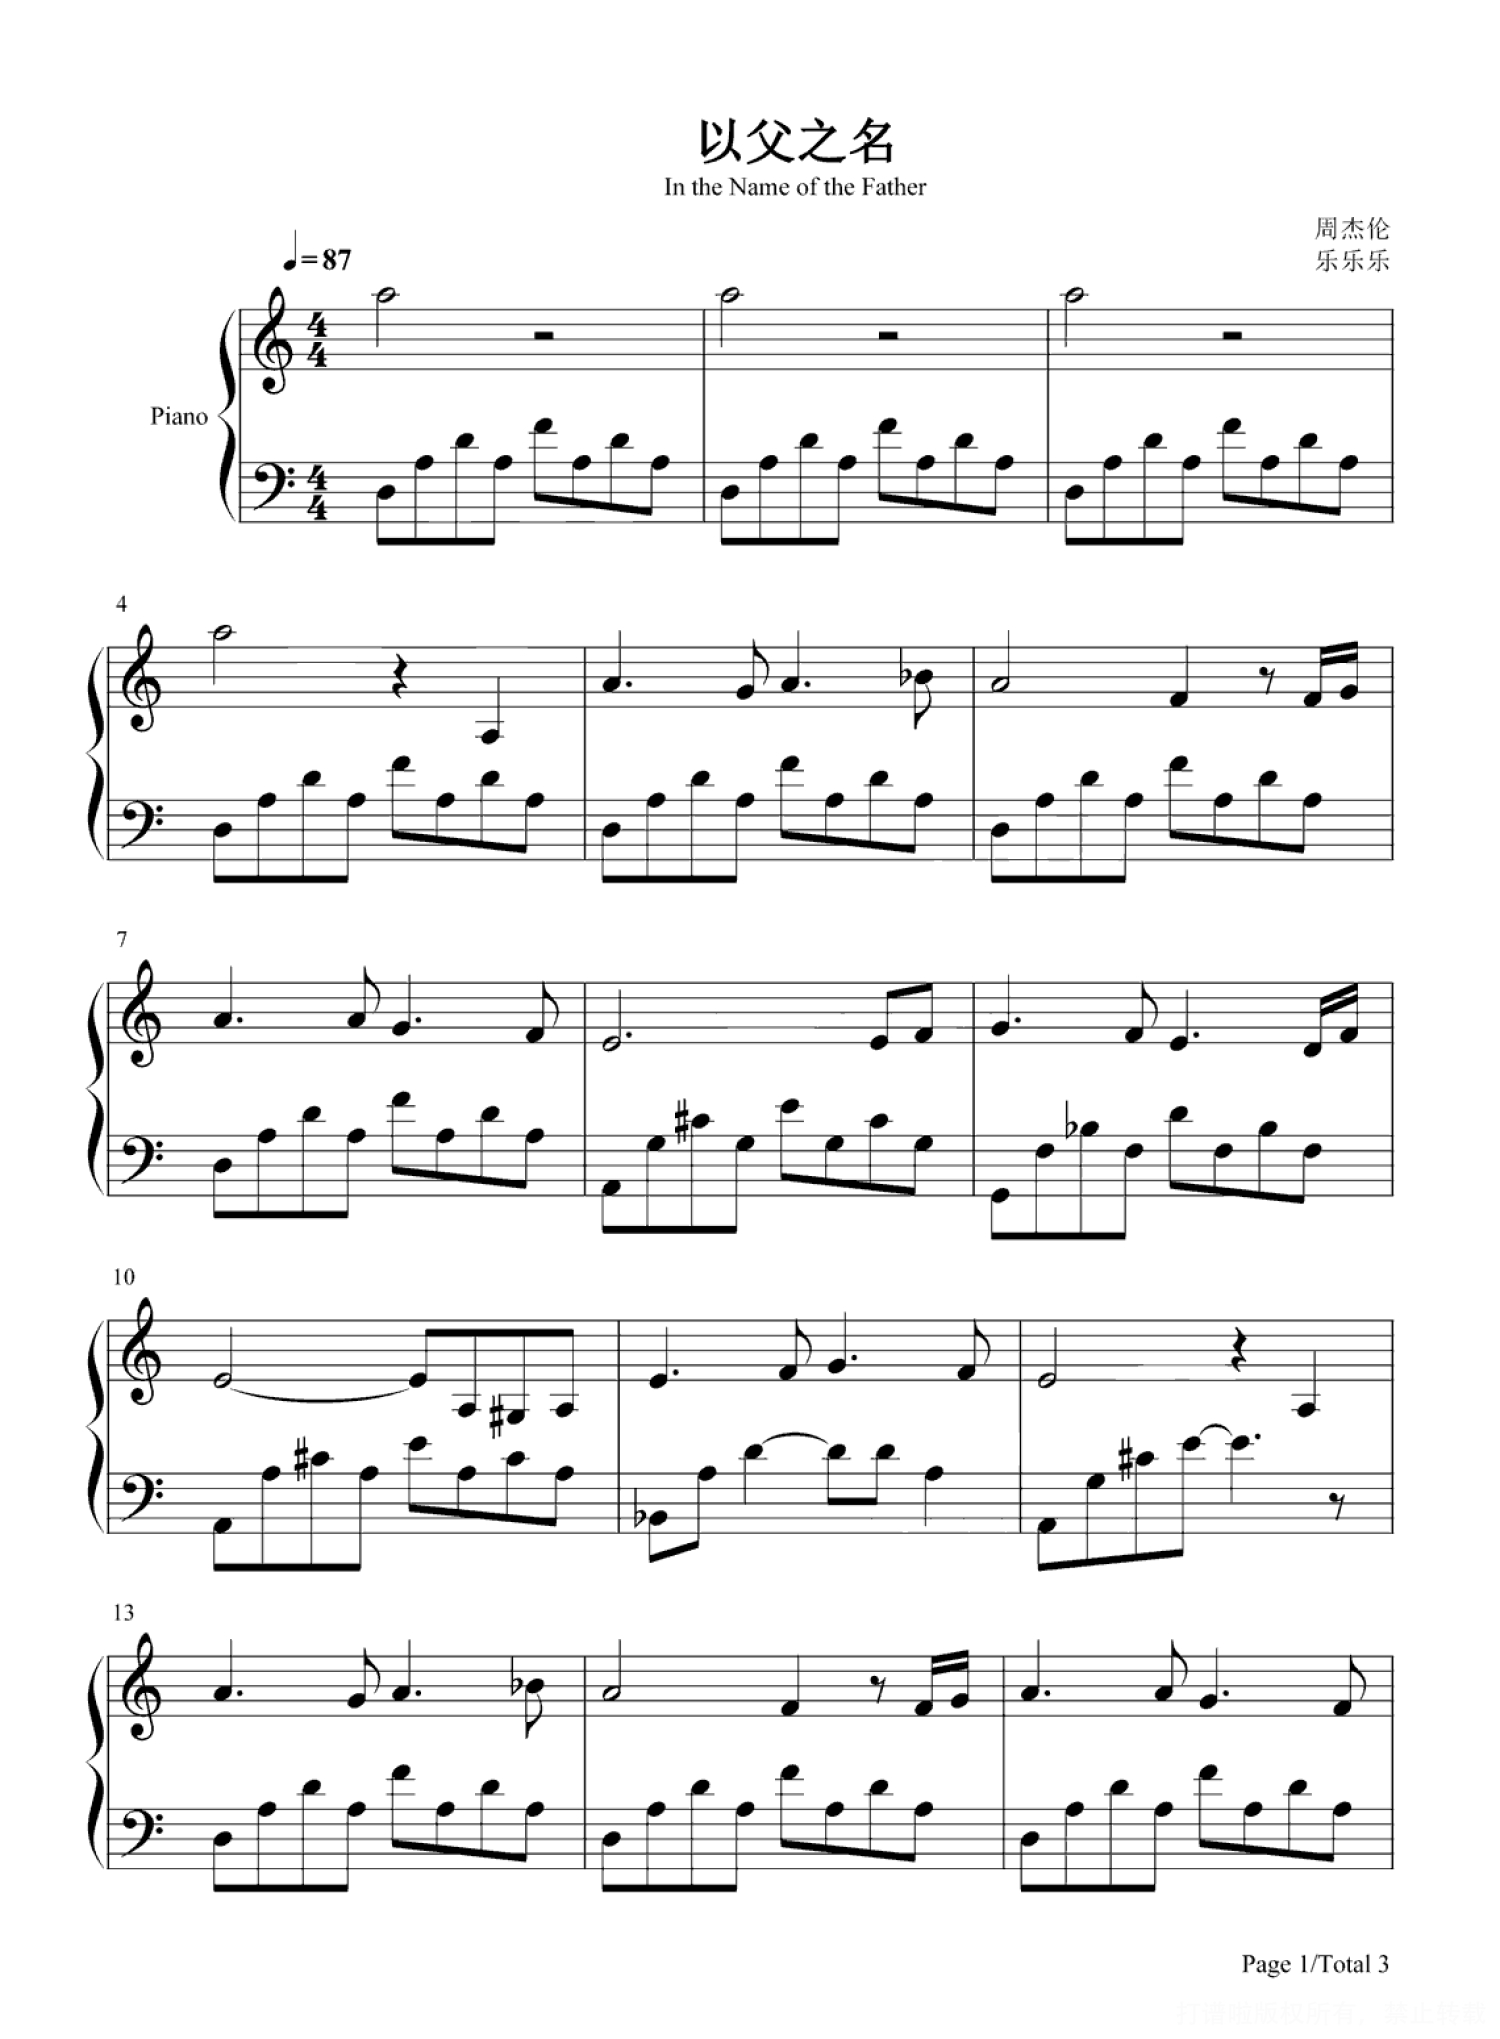 周杰伦《以父之名》钢琴谱 完整版第1张